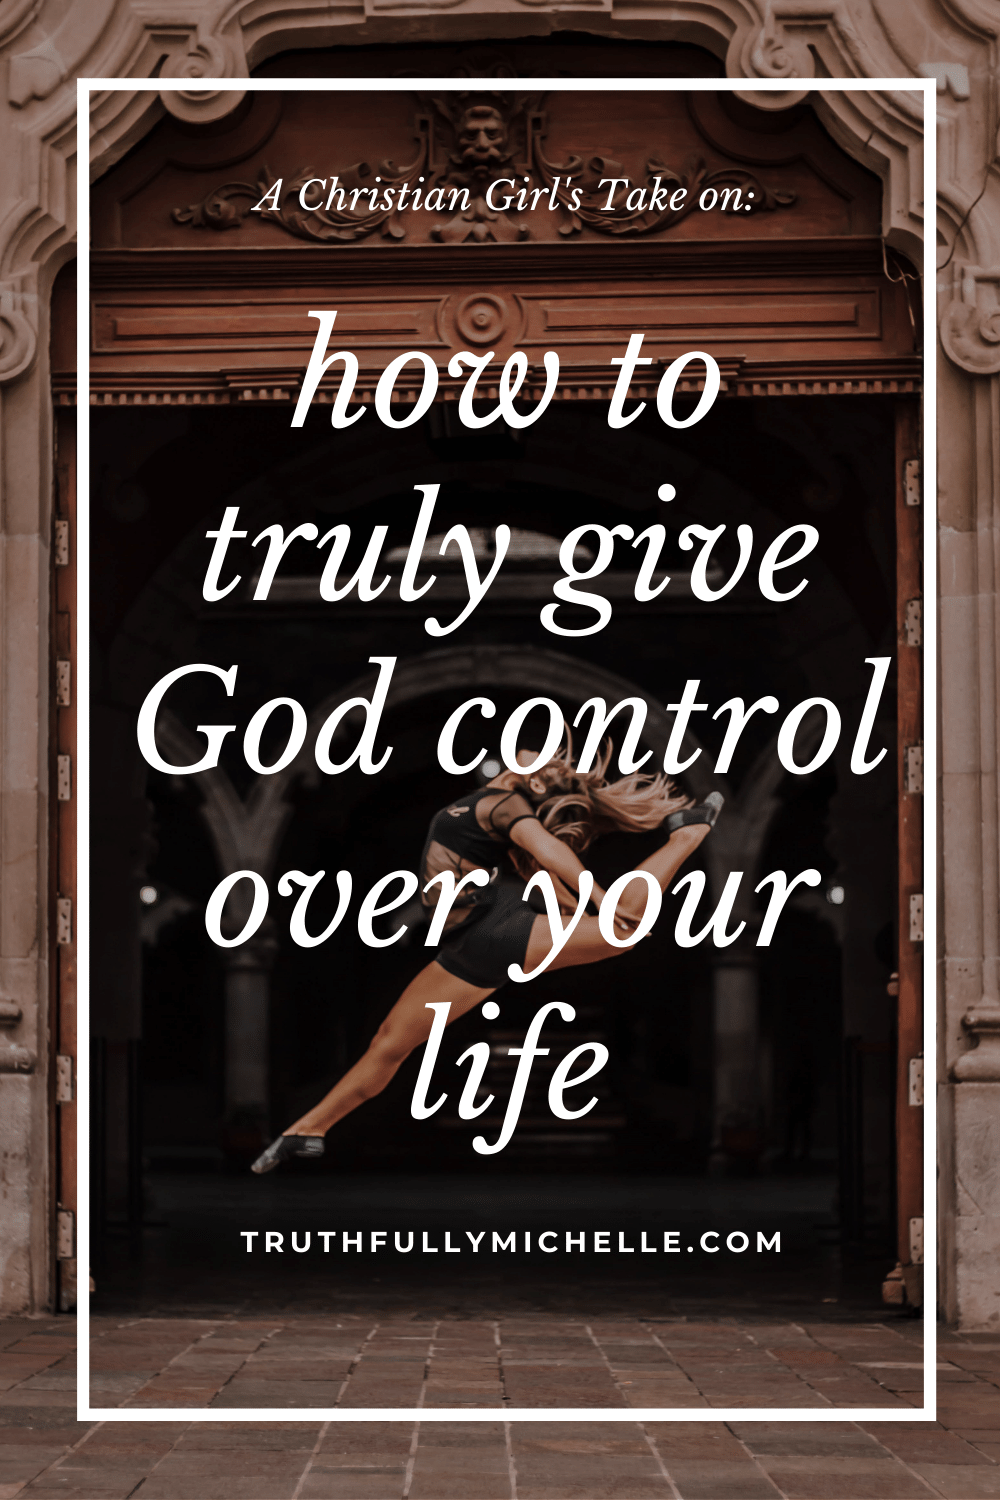 lasă-l pe Dumnezeu să preia controlul, Cum să-l lași pe Dumnezeu să preia controlul asupra vieții tale, când îl lași pe Dumnezeu să preia controlul, permițându-i lui Dumnezeu să conducă, renunțând la controlul lui Dumnezeu, lasă-l pe Dumnezeu să-ți controleze viața, permițându-i lui Dumnezeu să preia controlul, cum să-i dai lui Dumnezeu controlul, Dumnezeu îmi controlează viața și destinul, cum să ai credință în Dumnezeu complet, cum să-l lași pe Dumnezeu să preia controlul, Cum să ai încredere deplină în Dumnezeu, cum să ai încredere în Dumnezeu în vremuri grele inspirație și încurajare spirituală